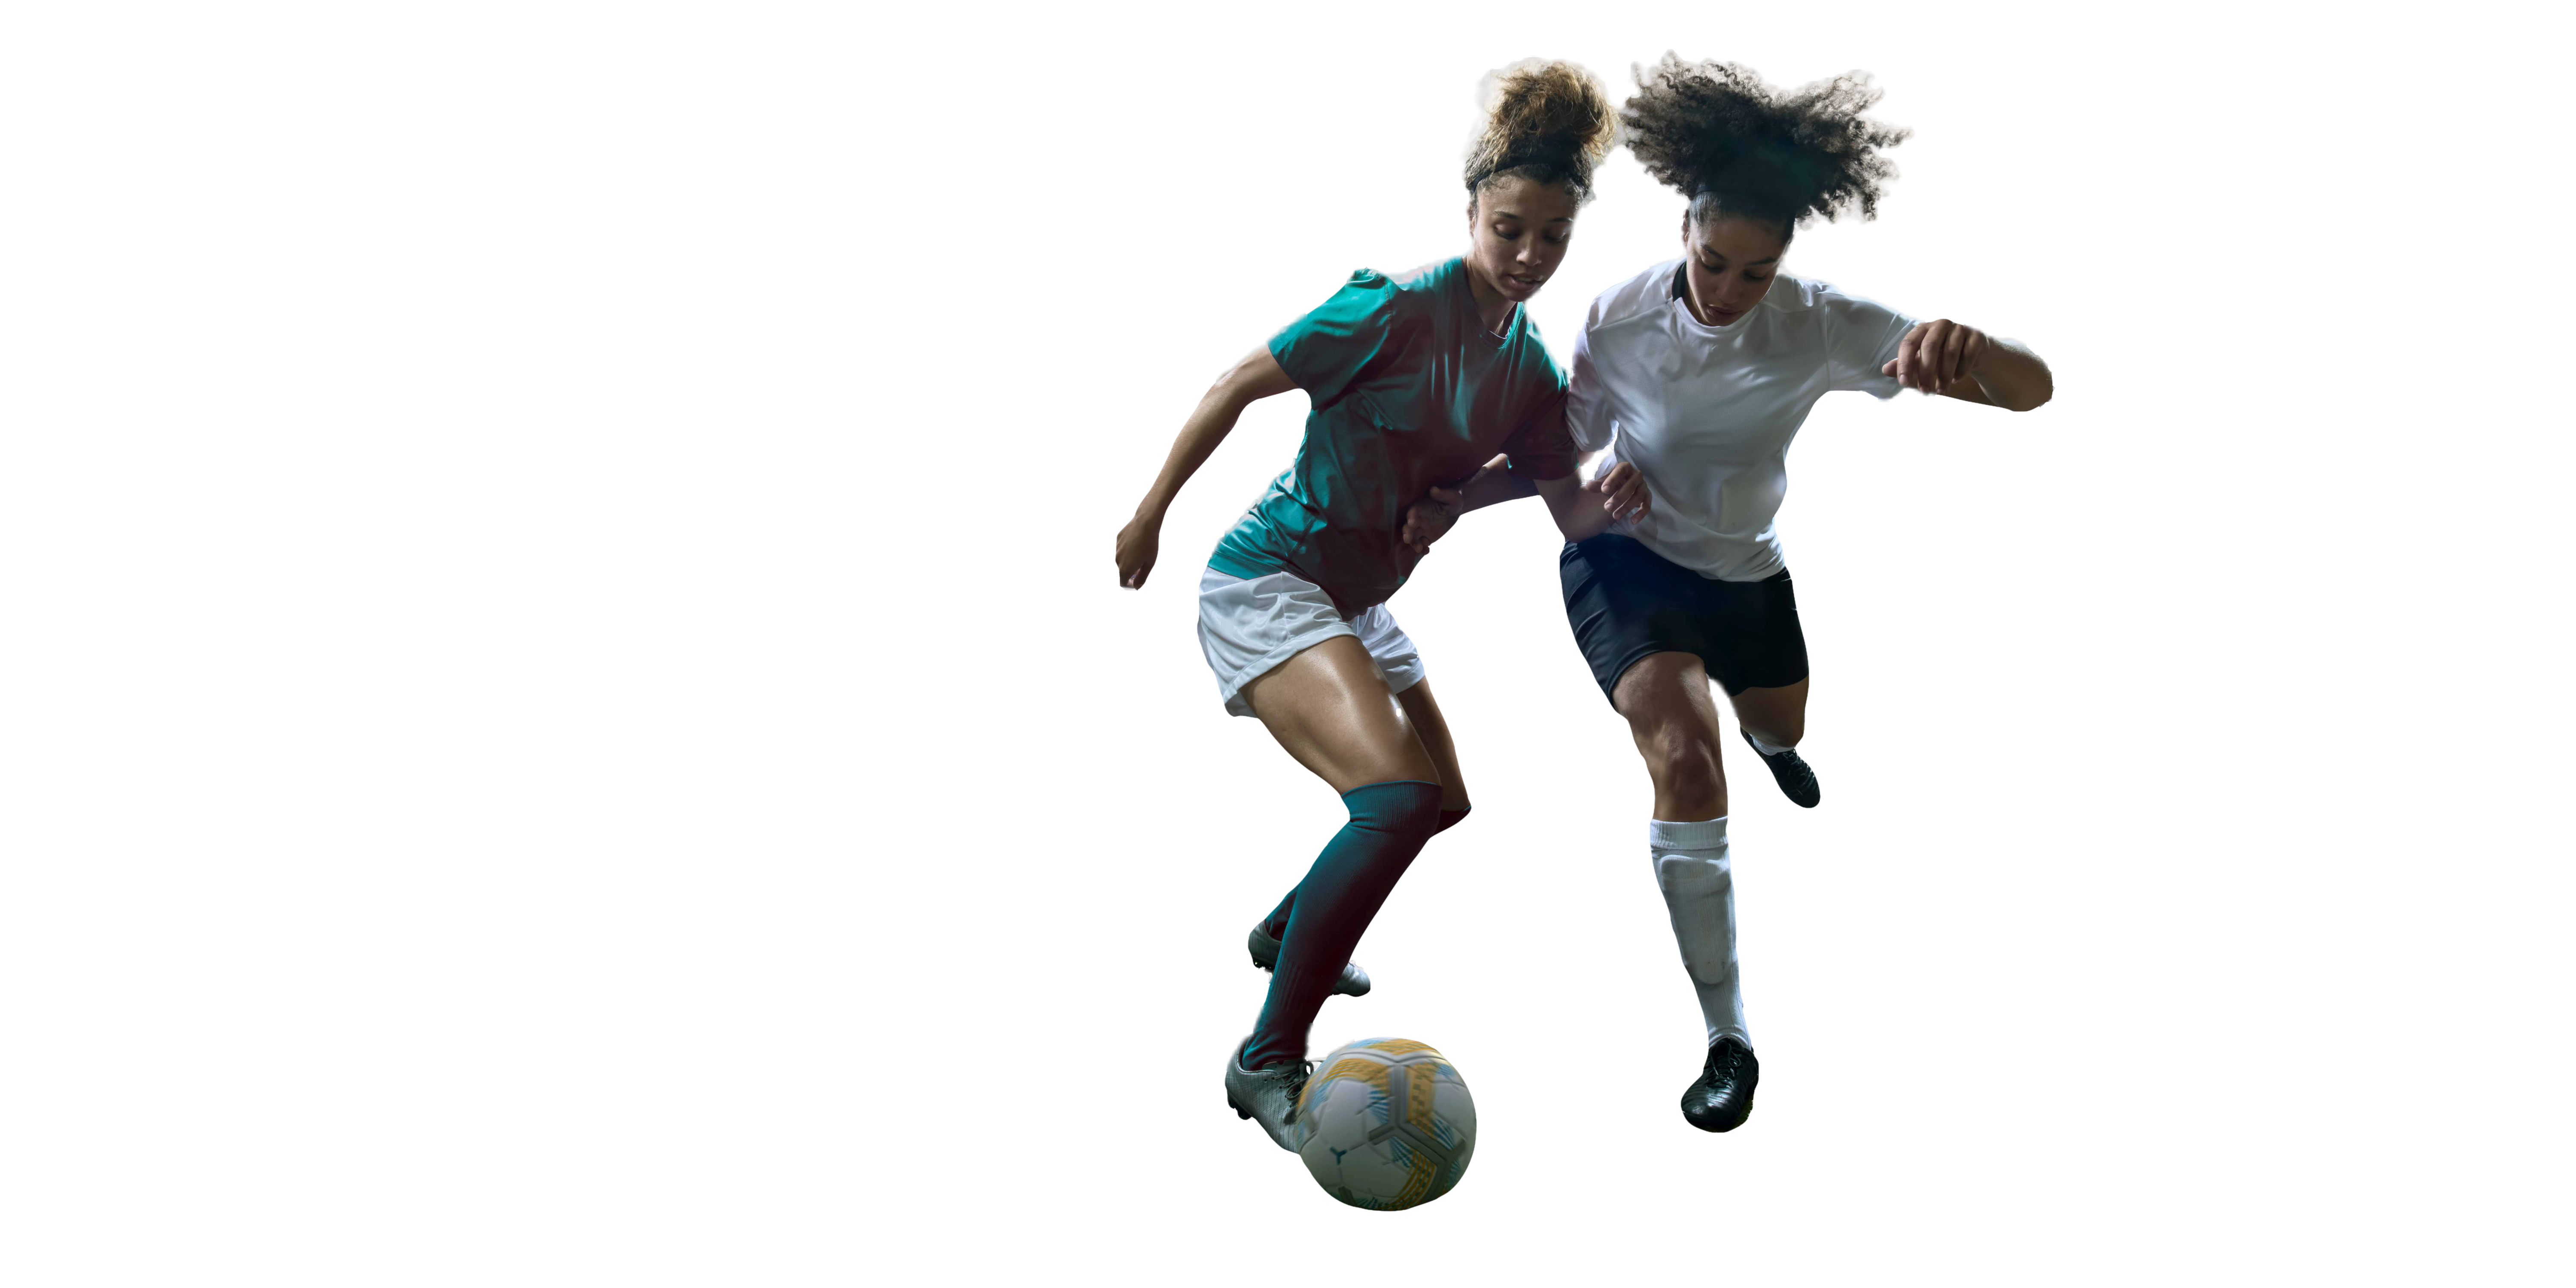 Mujeres jugando al fútbol